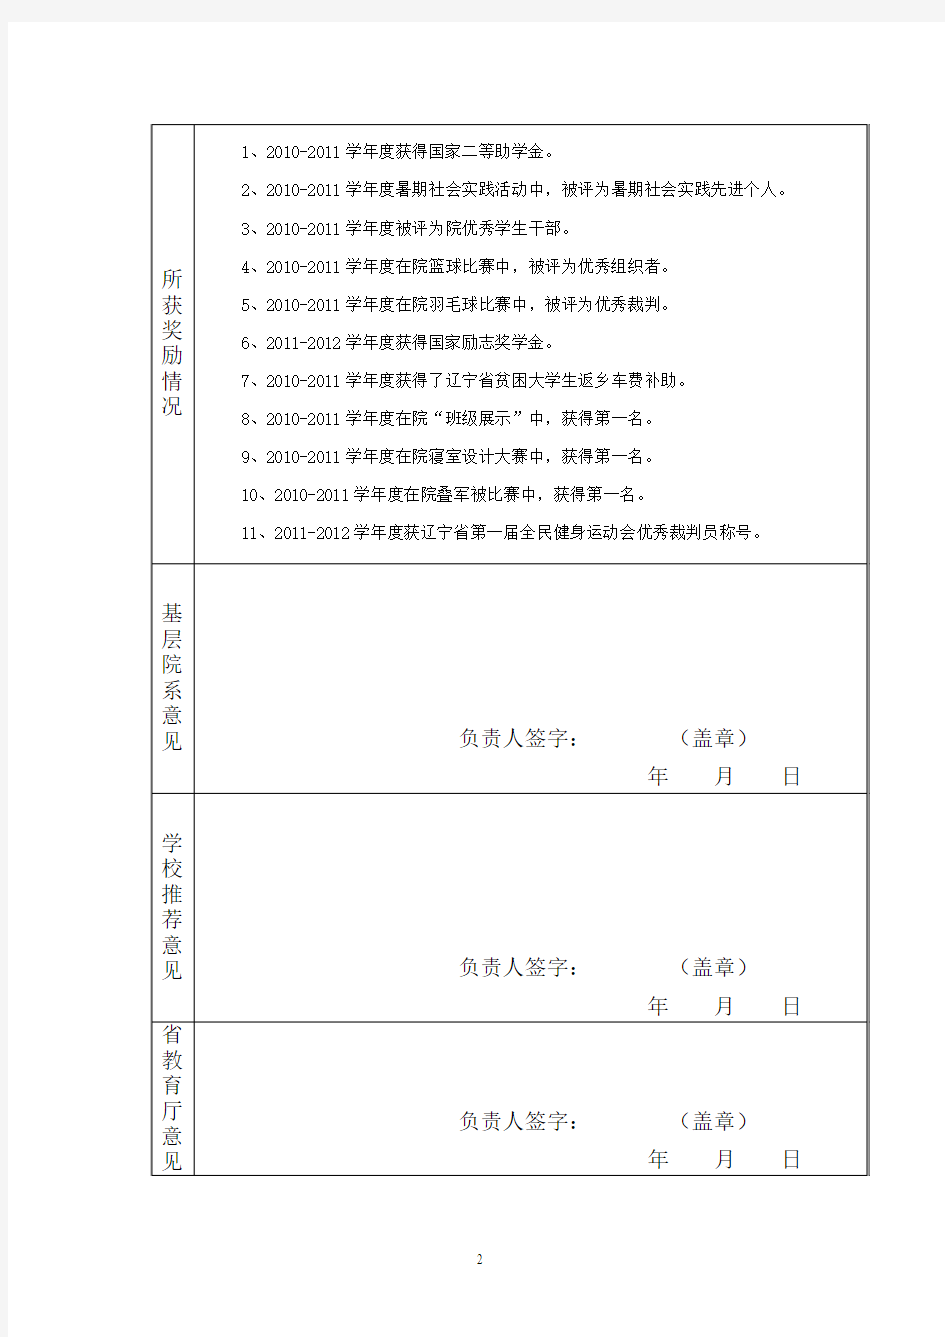 辽宁省励志成才优秀大学生报名表(1)(1)555555